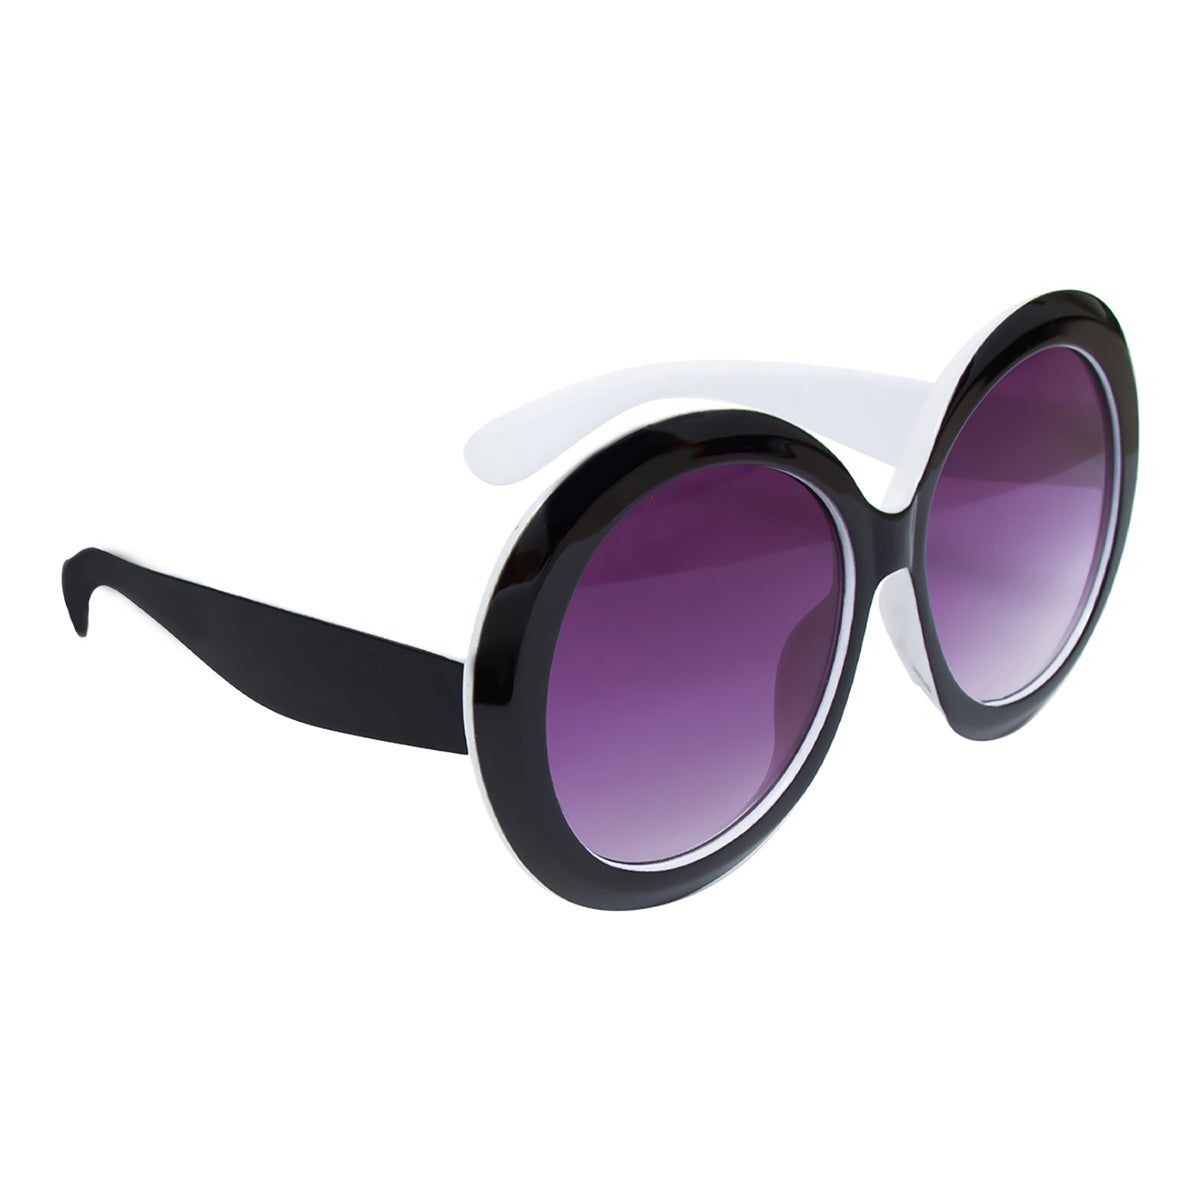 Sunglasses with large round lenses | Museum of Design in Plastics